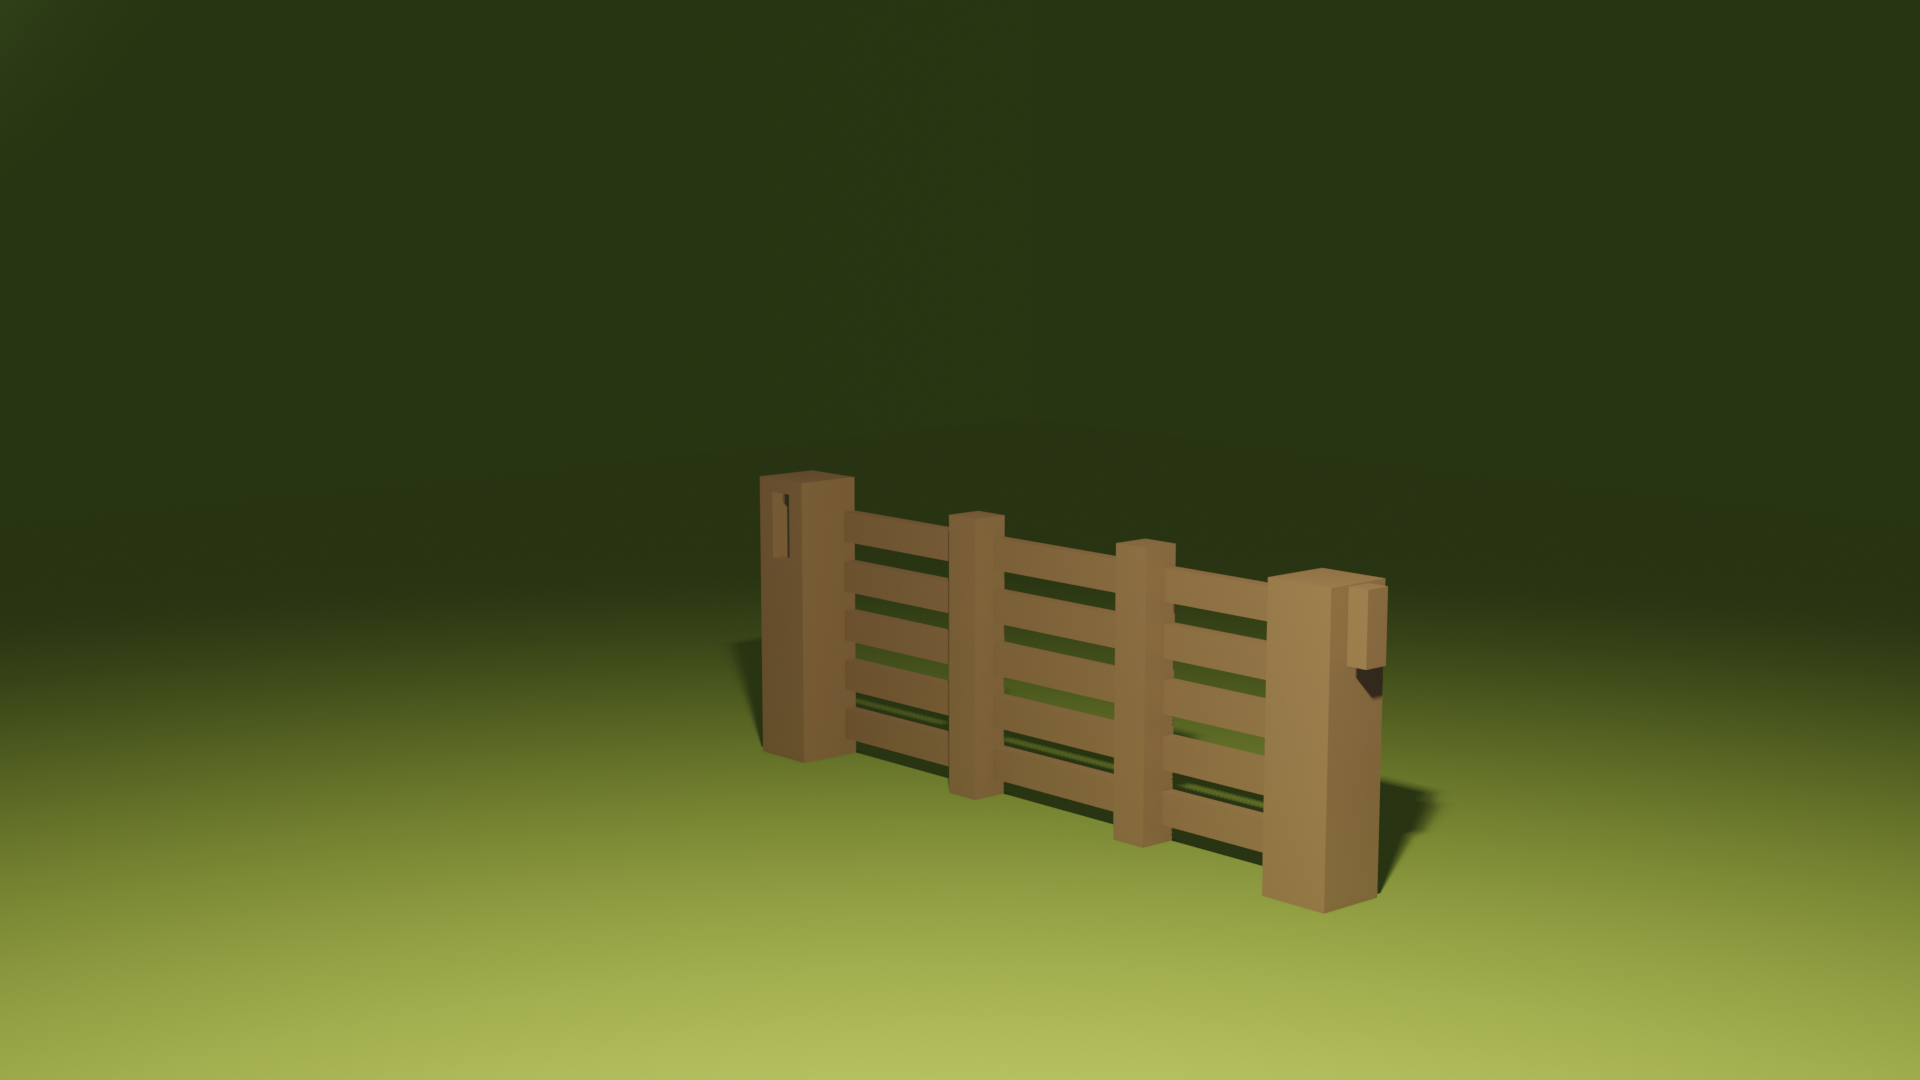 Modular farm fence